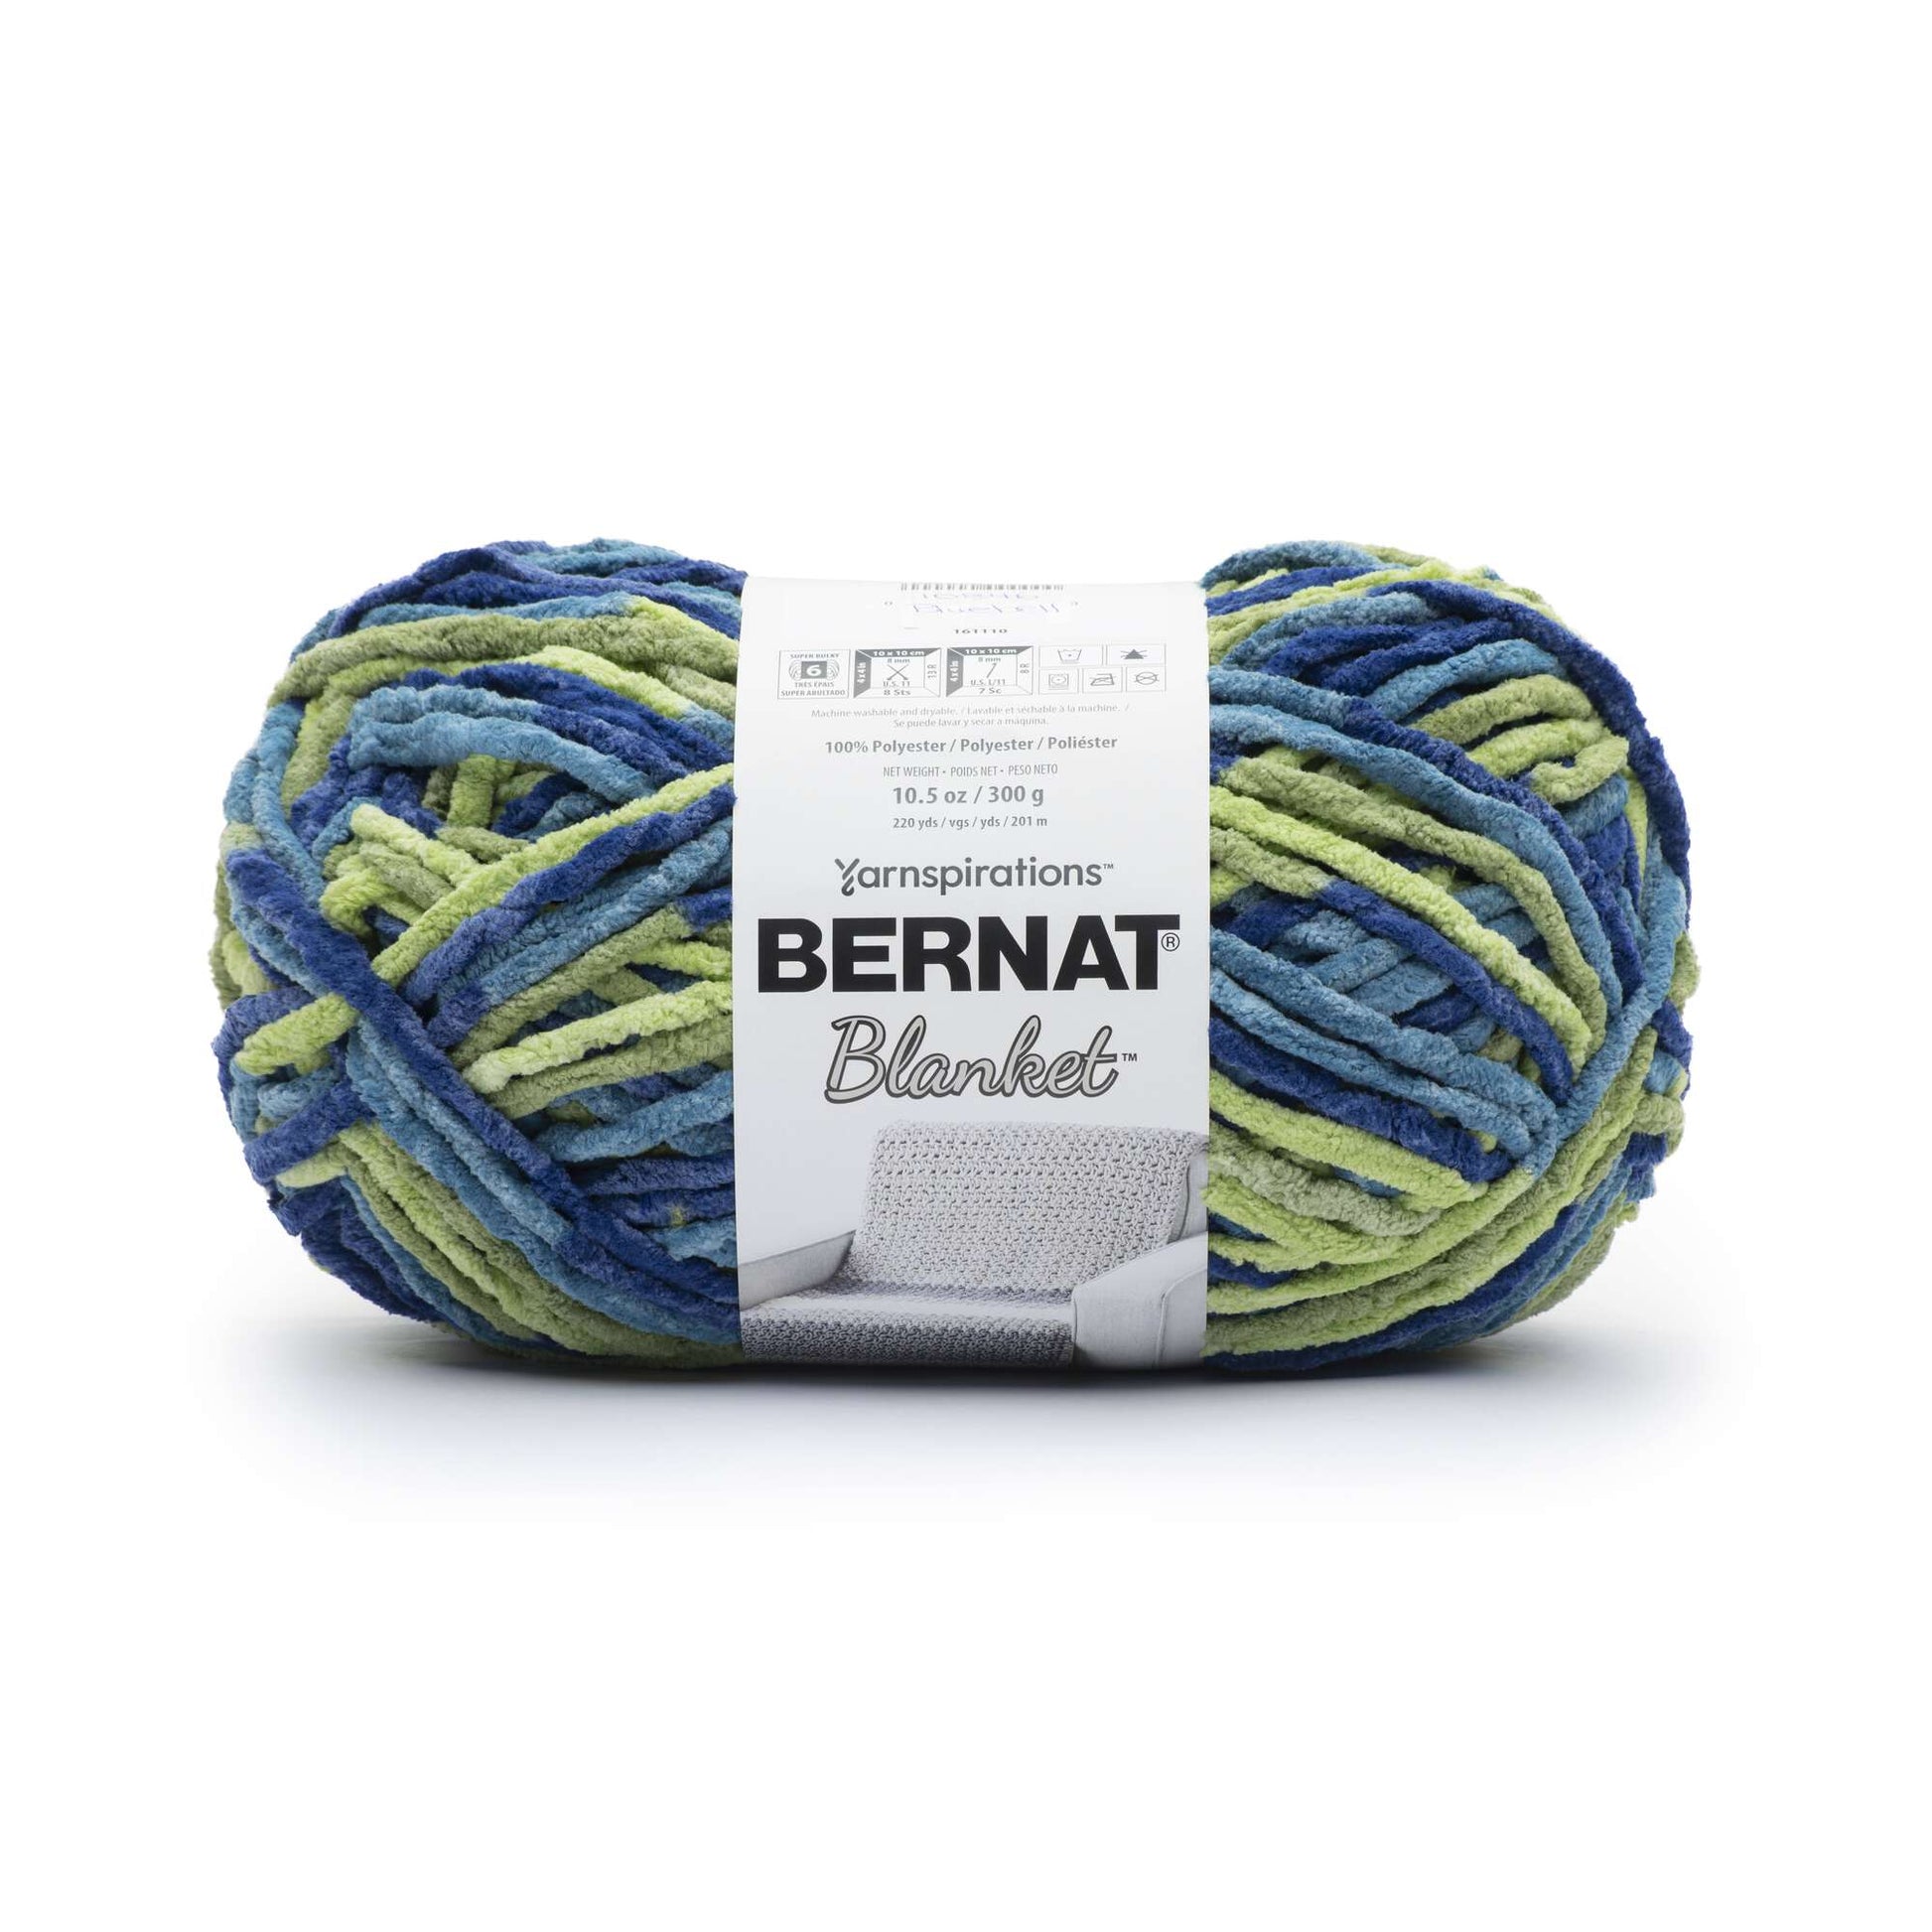 Bernat Blanket Yarn (300g/10.5oz) Bluebell Varg